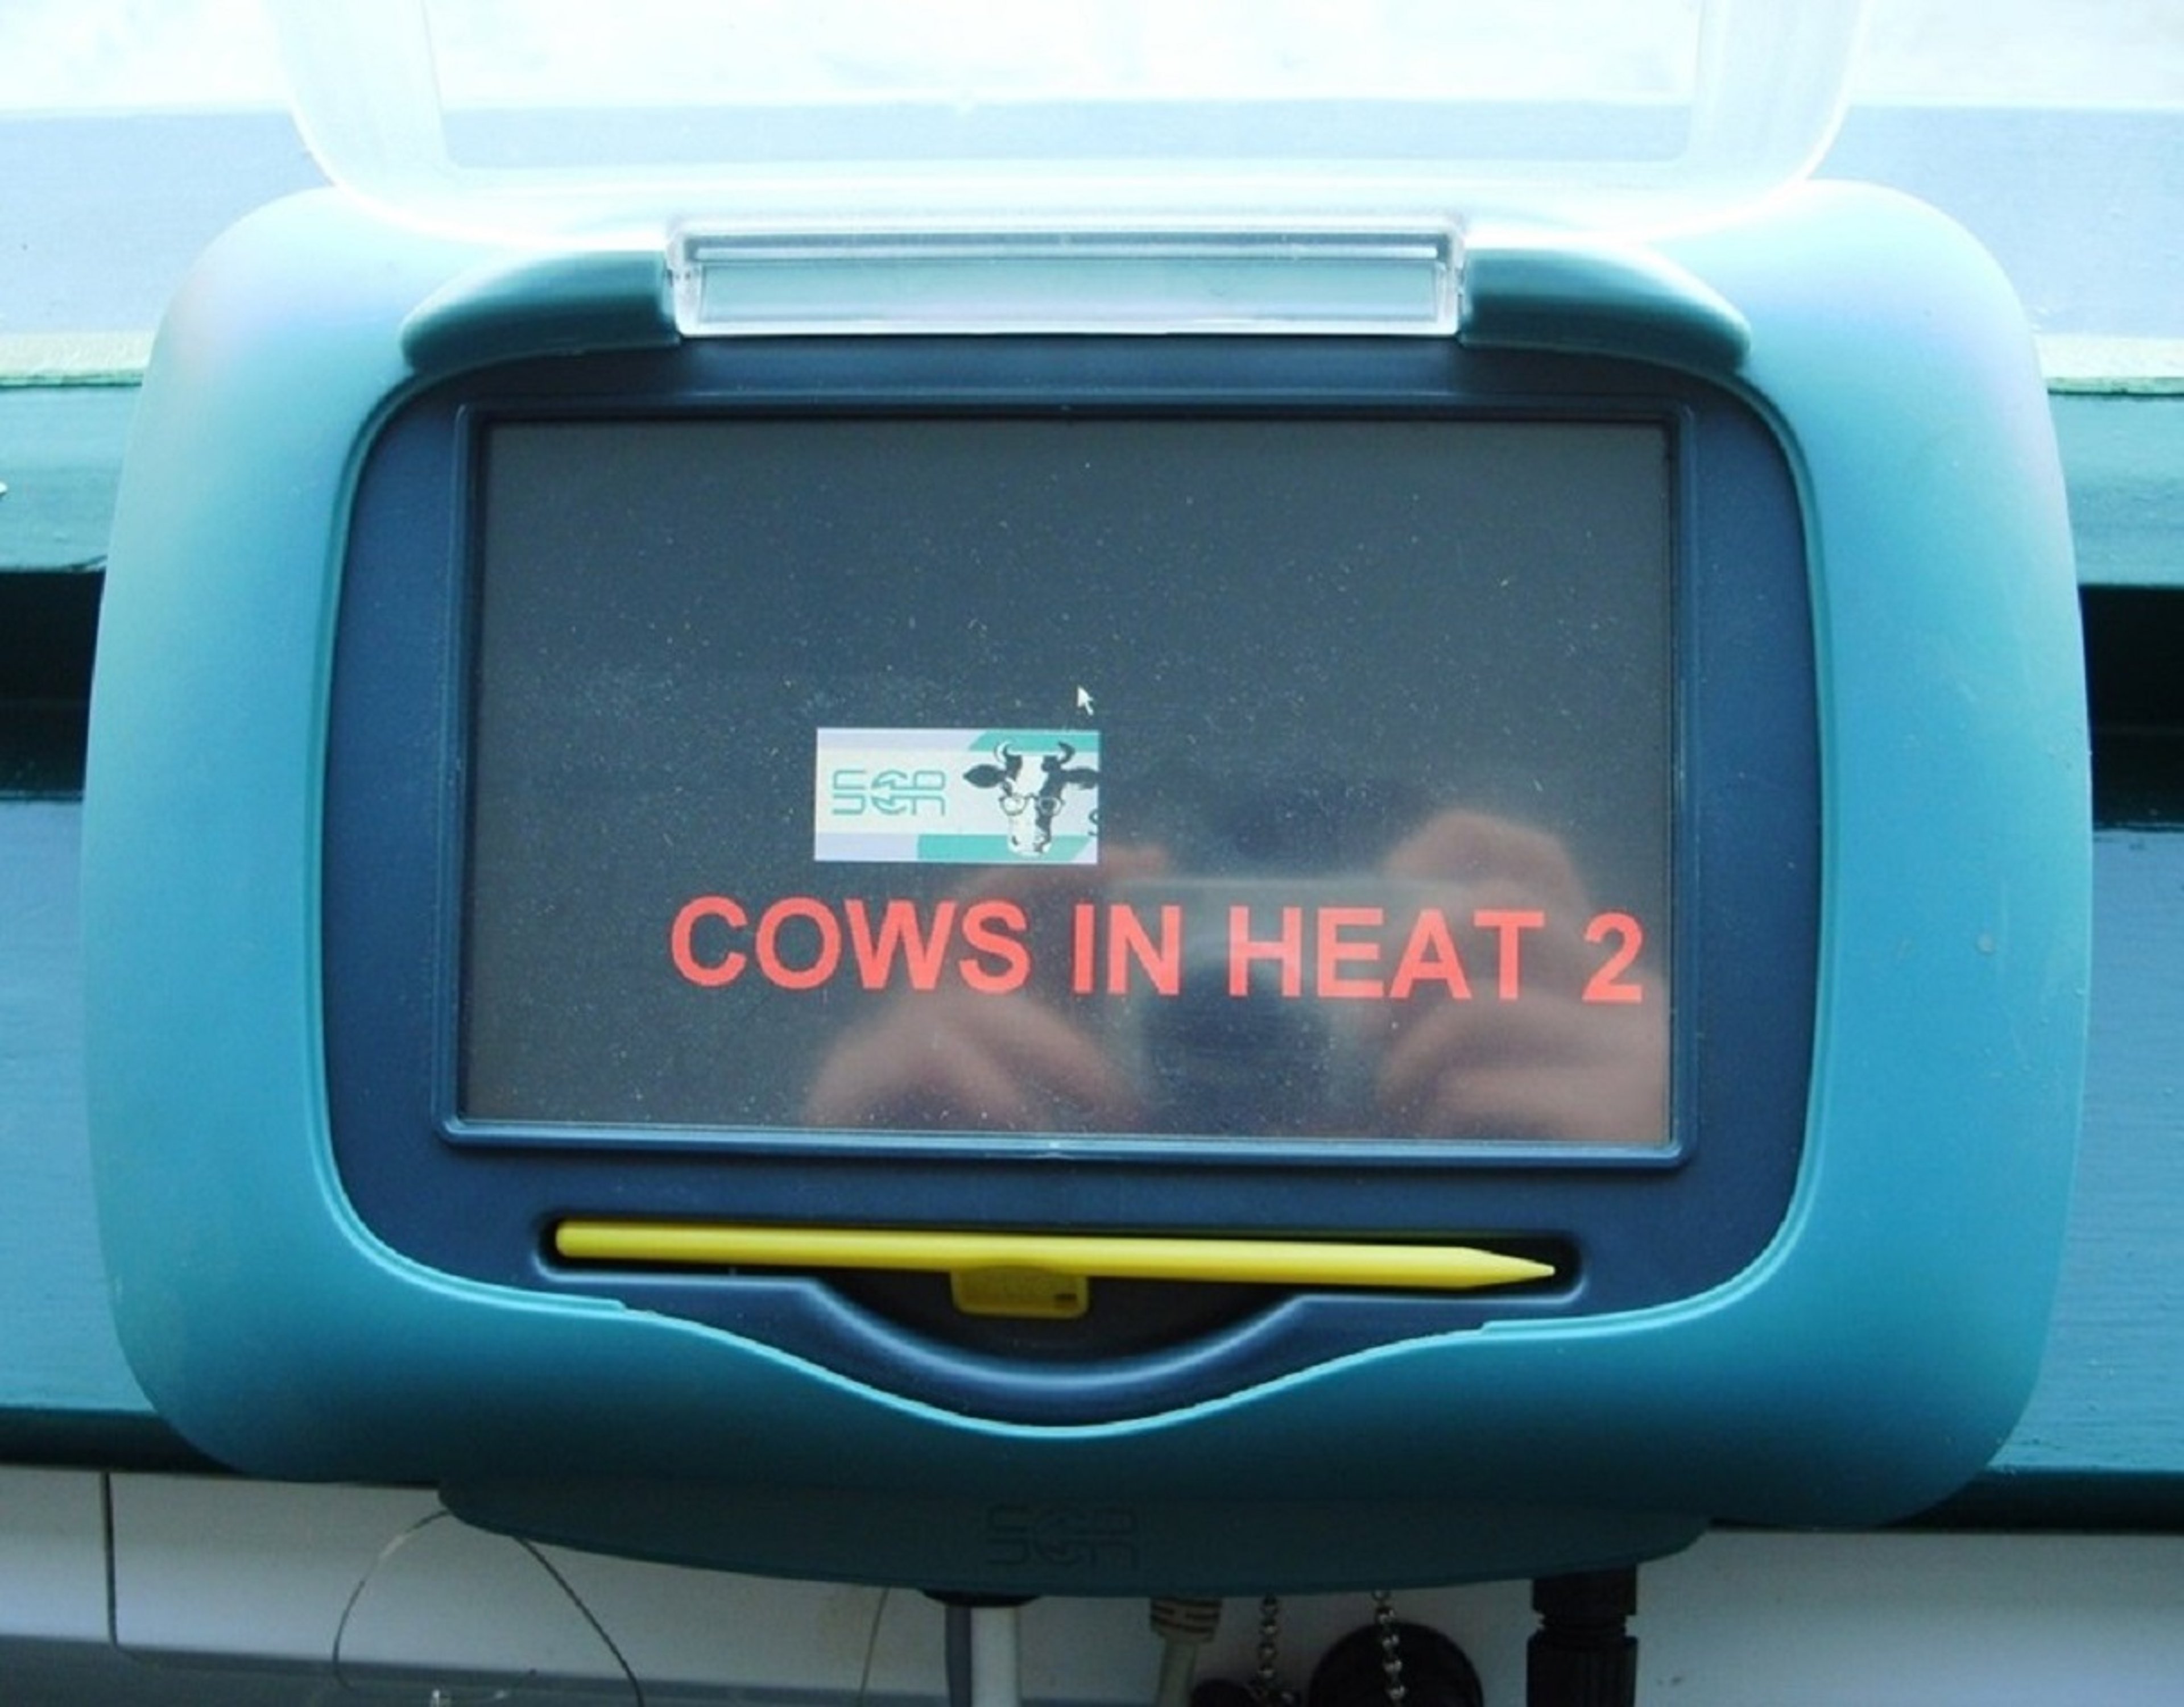 Activity sensor system showing cows in estrus